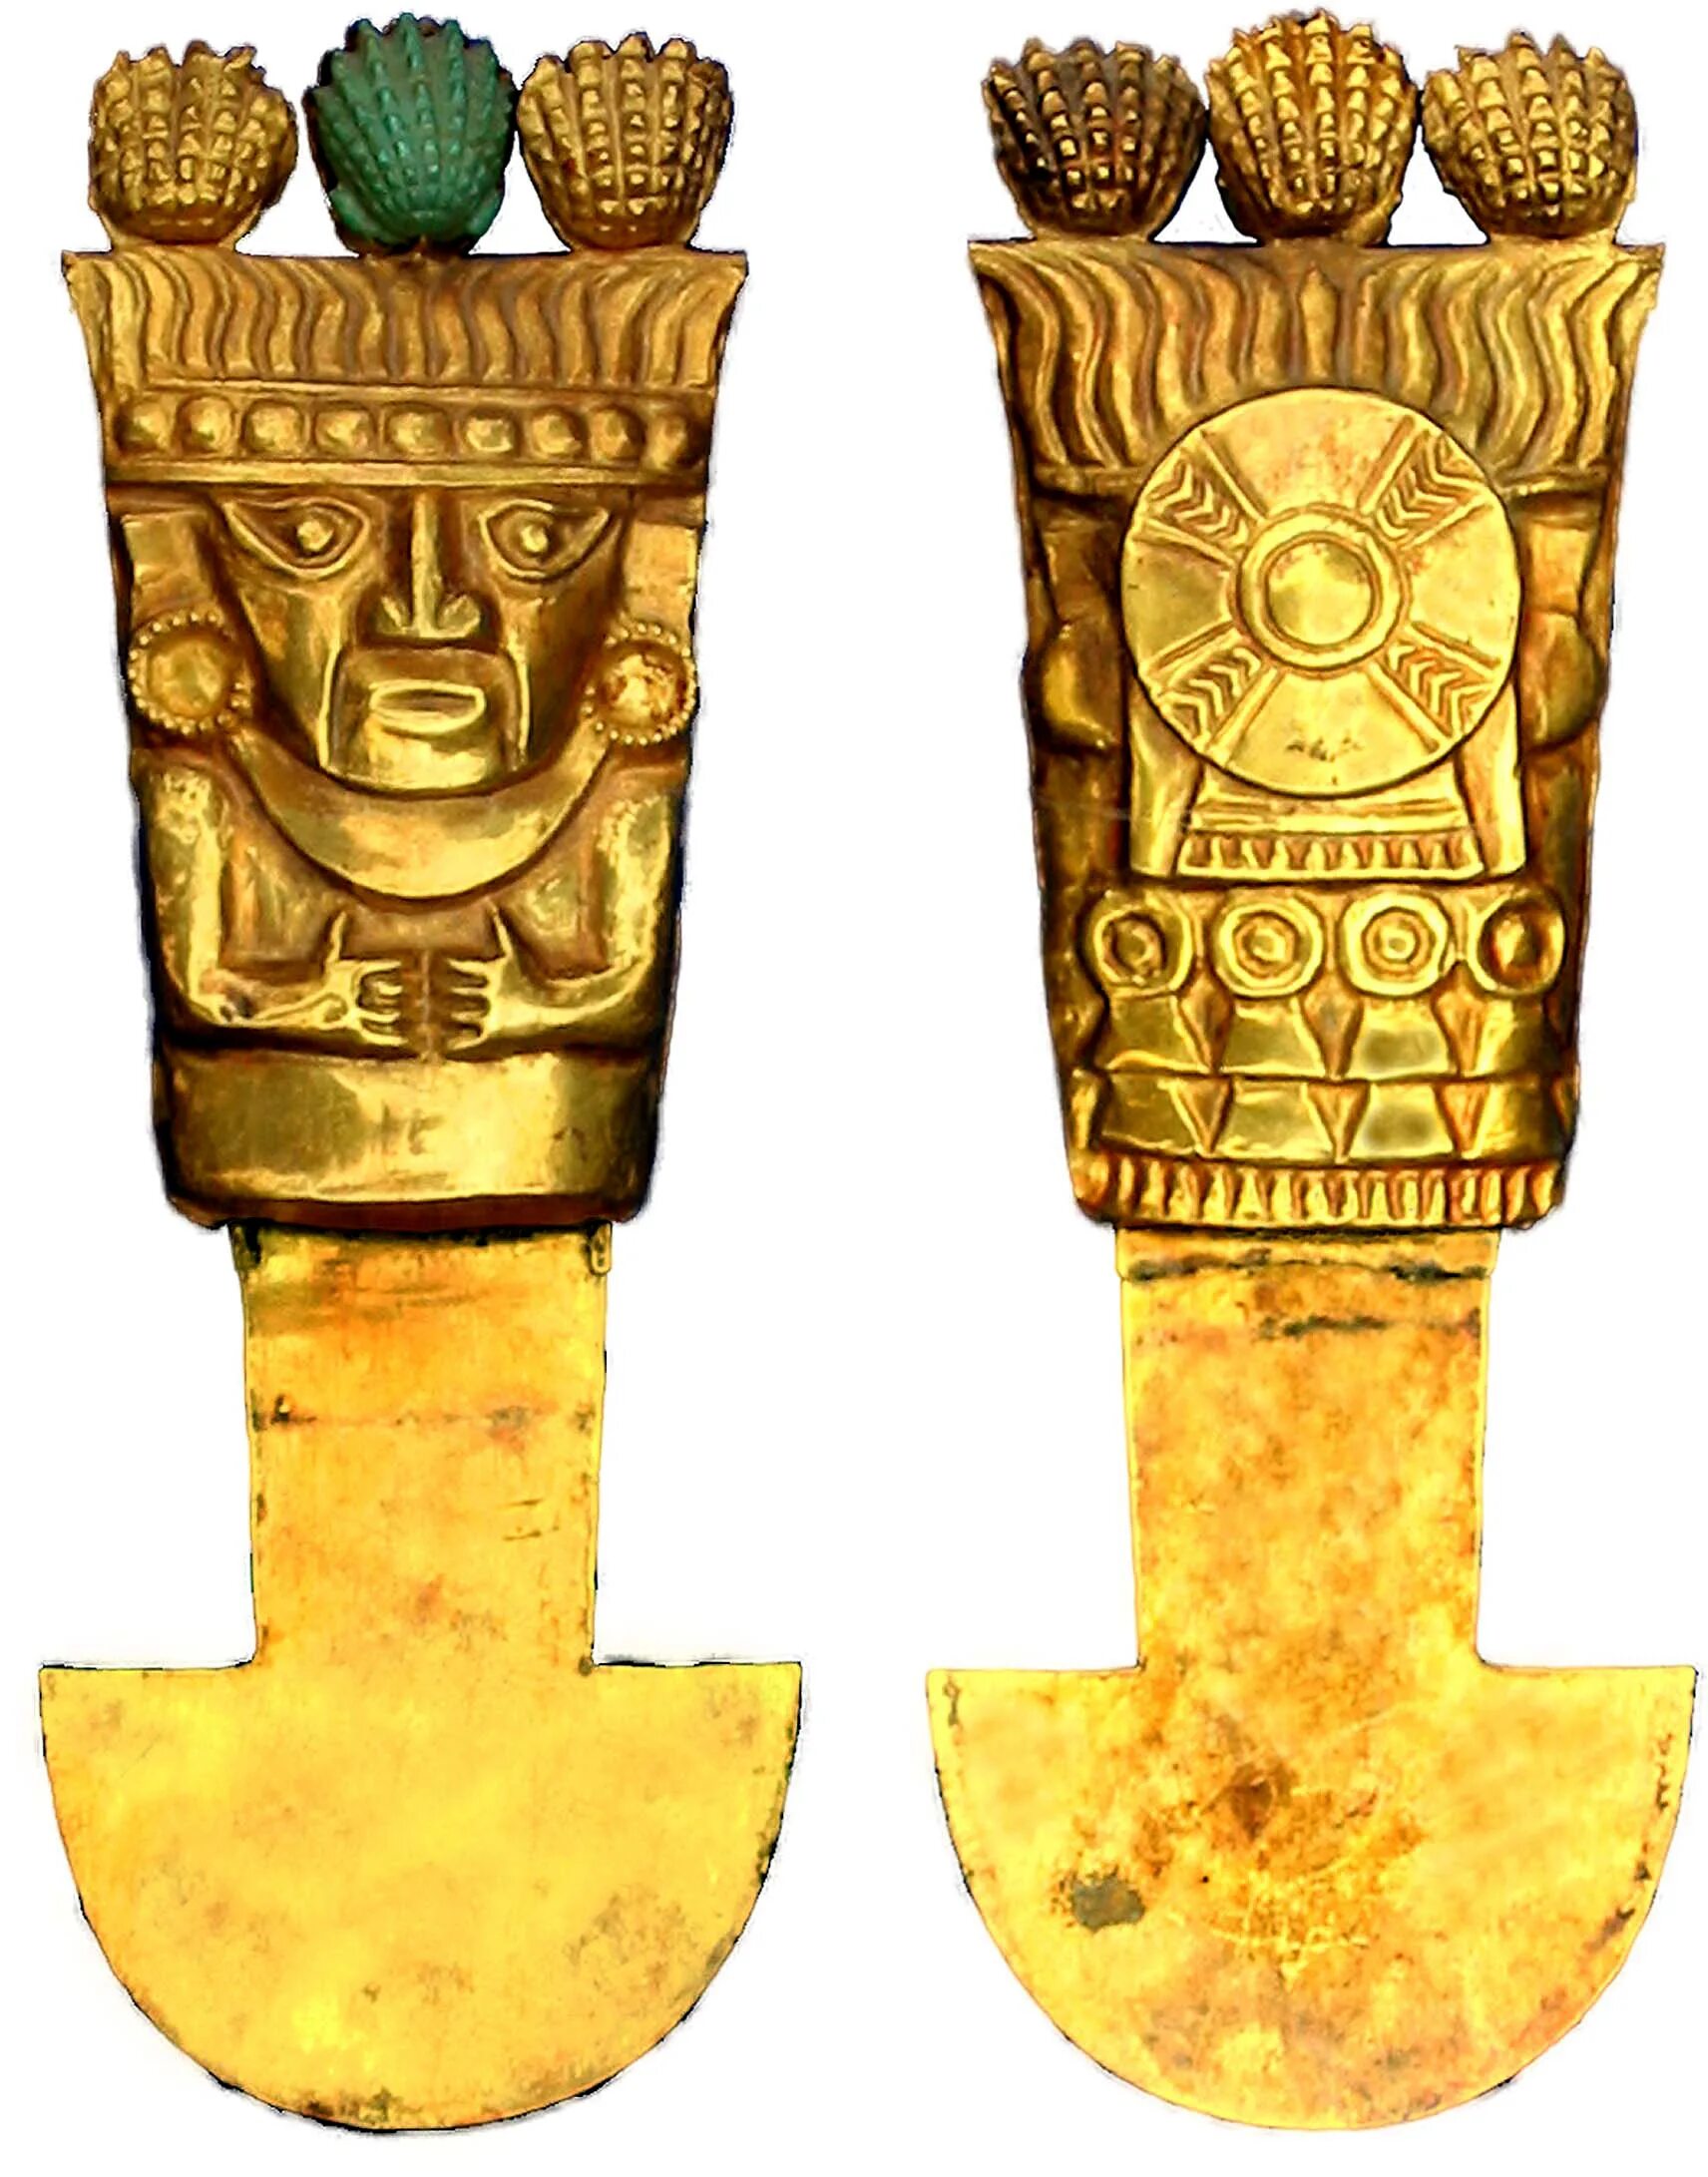 Вещь идол. Золото империи инков. Золотая маска инков Майя и ацтеков. Золотые изделия инков ,Майя и ацтеков. Золото древних инков.